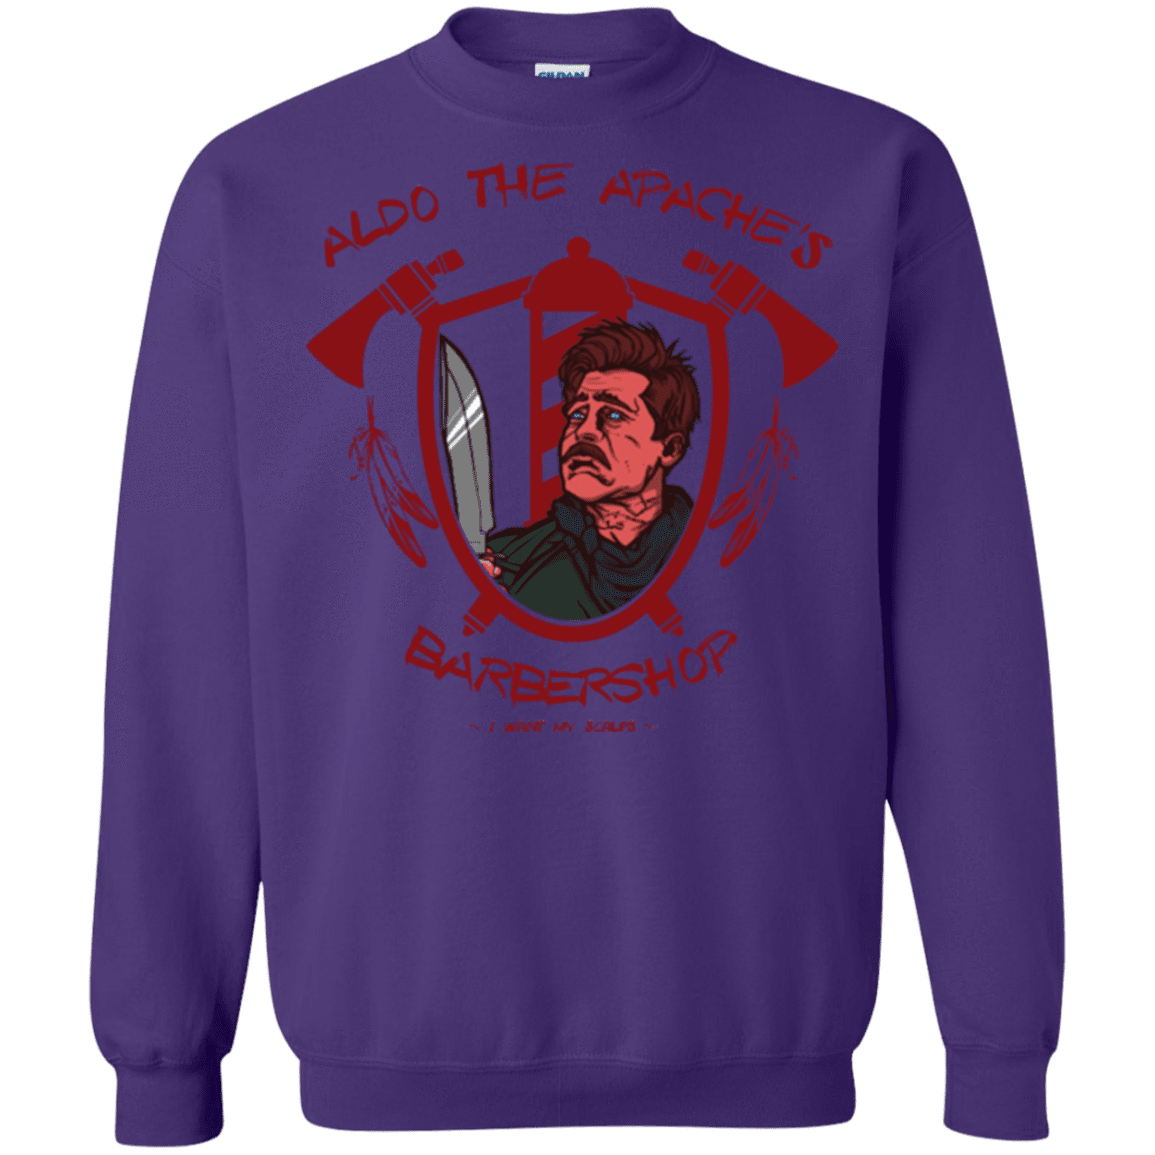 Sweatshirts Purple / Small Aldos Barber Shop Crewneck Sweatshirt